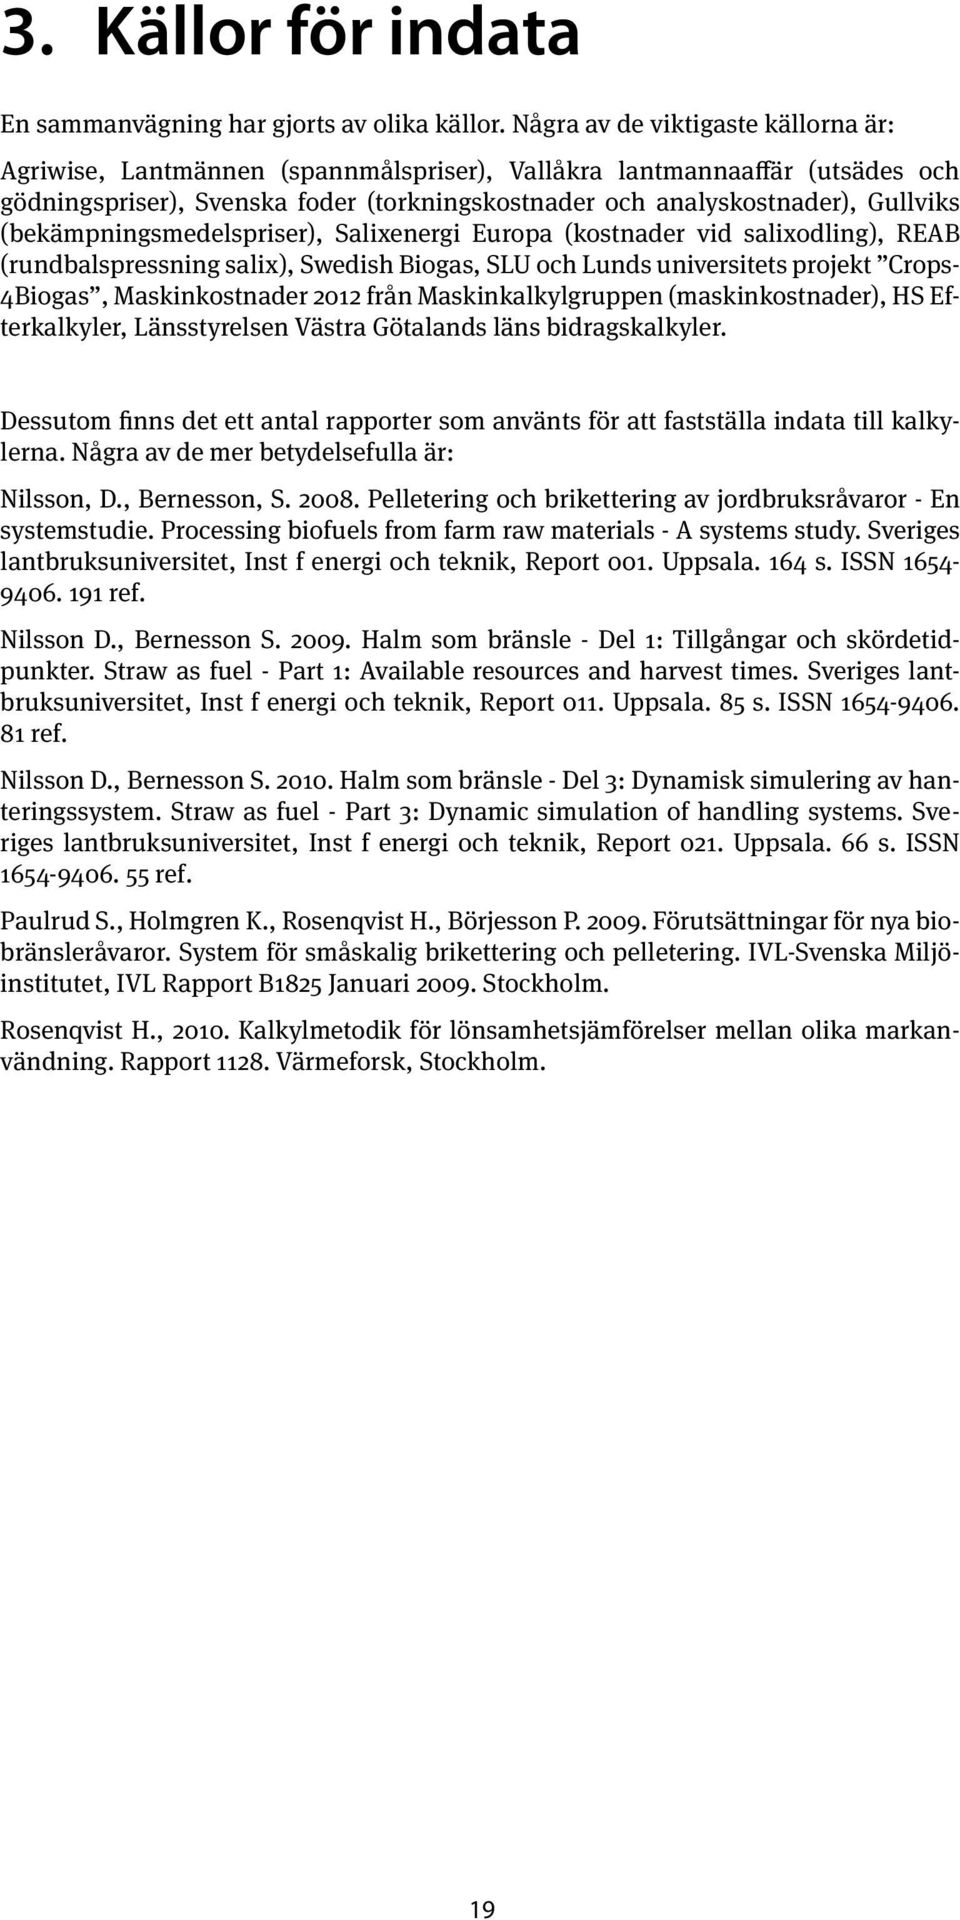 (bekämpningsmedelspriser), Salixenergi Europa (kostnader vid salixodling), REAB (rundbalspressning salix), Swedish Biogas, SLU och Lunds universitets projekt Crops- 4Biogas, Maskinkostnader 2012 från